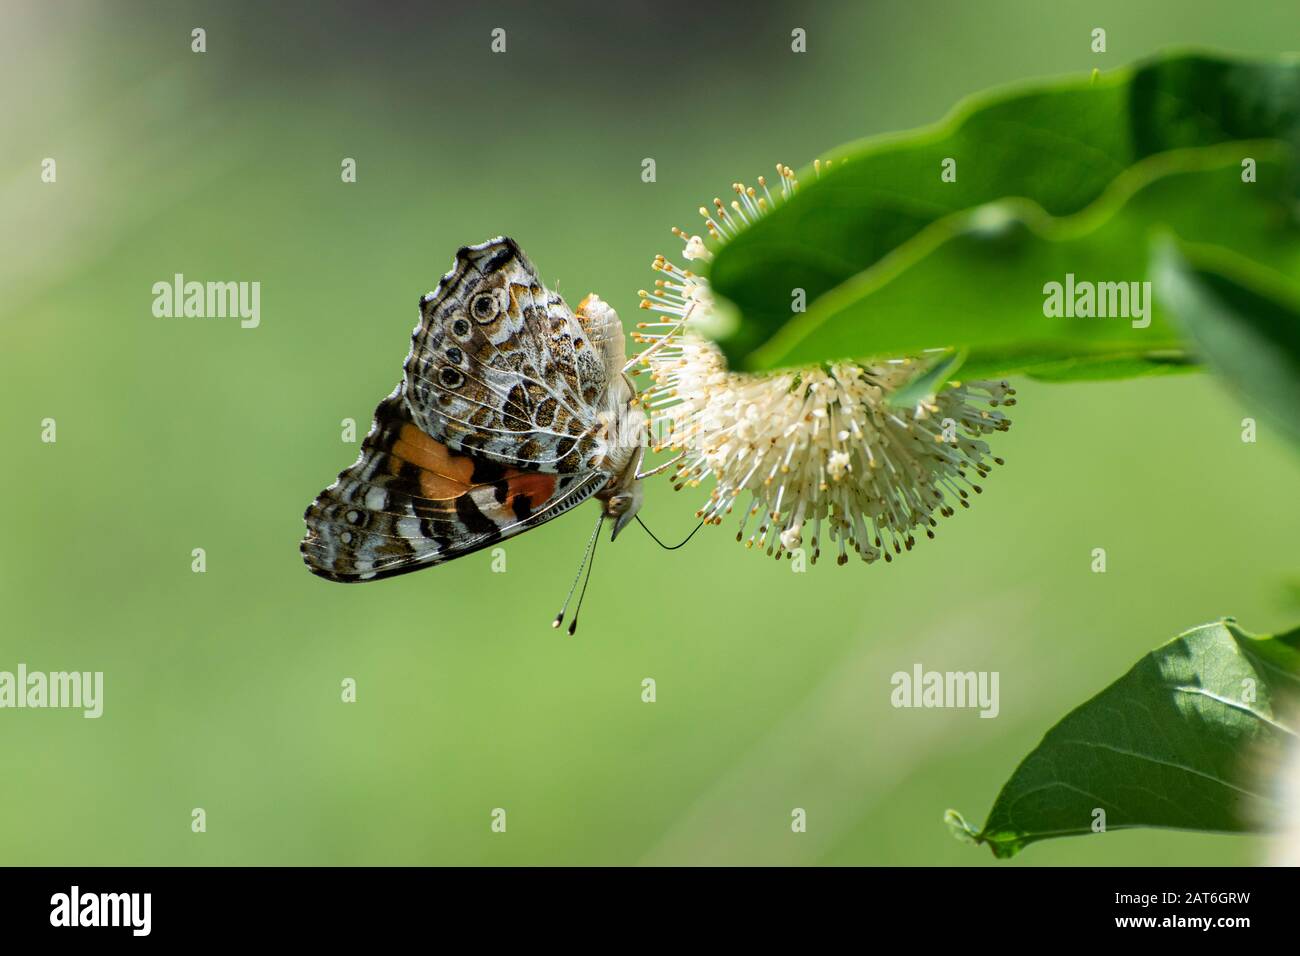 Perfil de una hermosa naranja Golfo Fritillary mariposa boca abajo, con sus alas cerradas mostrando los puntos en blanco y negro mientras se alimenta en el Foto de stock